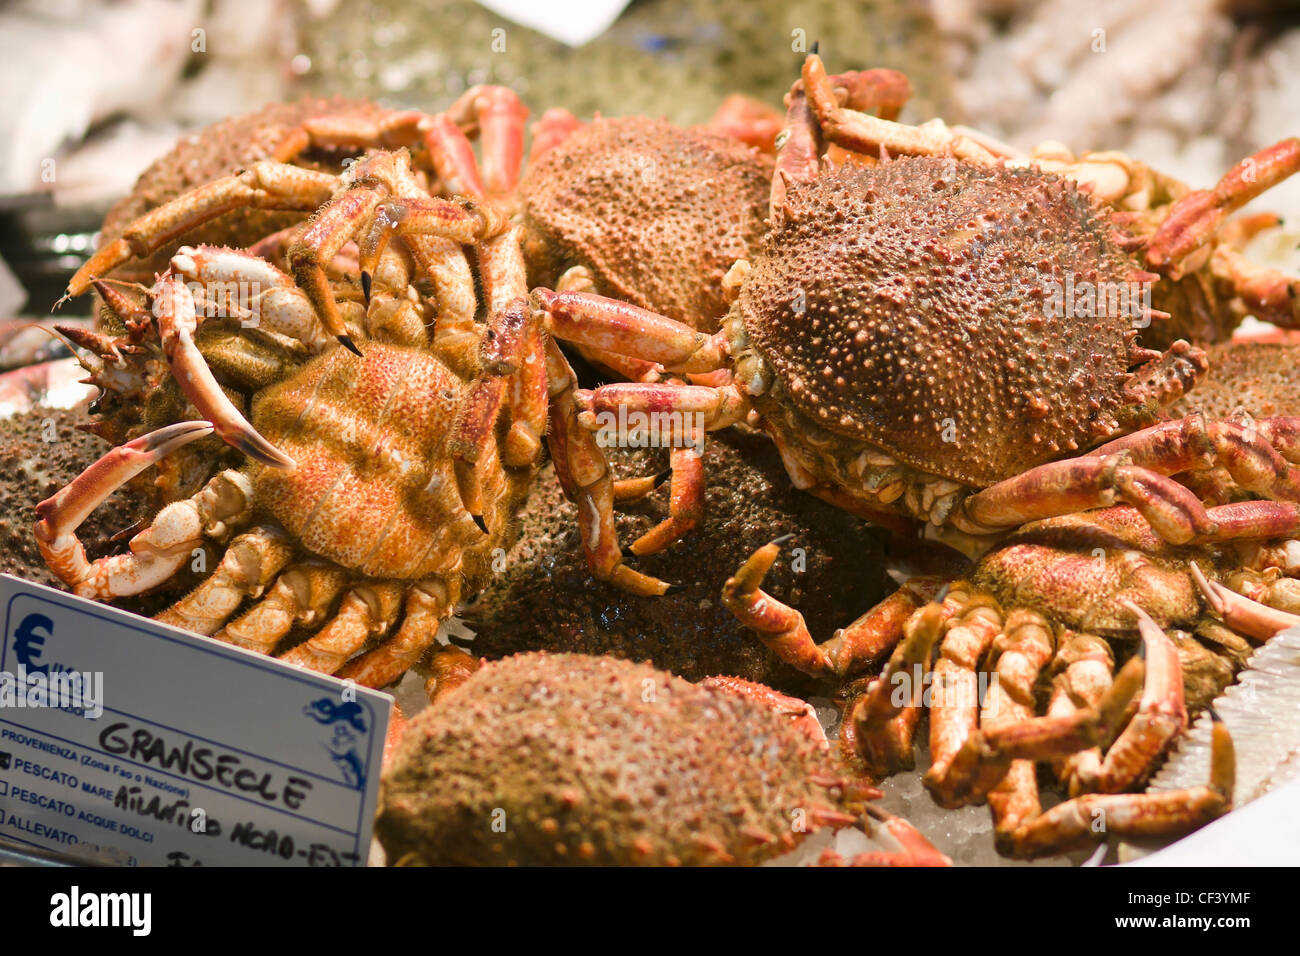 Spider crab for sale at the Rialto fish market - Venice, Venezia, Italy, Europe Stock Photo